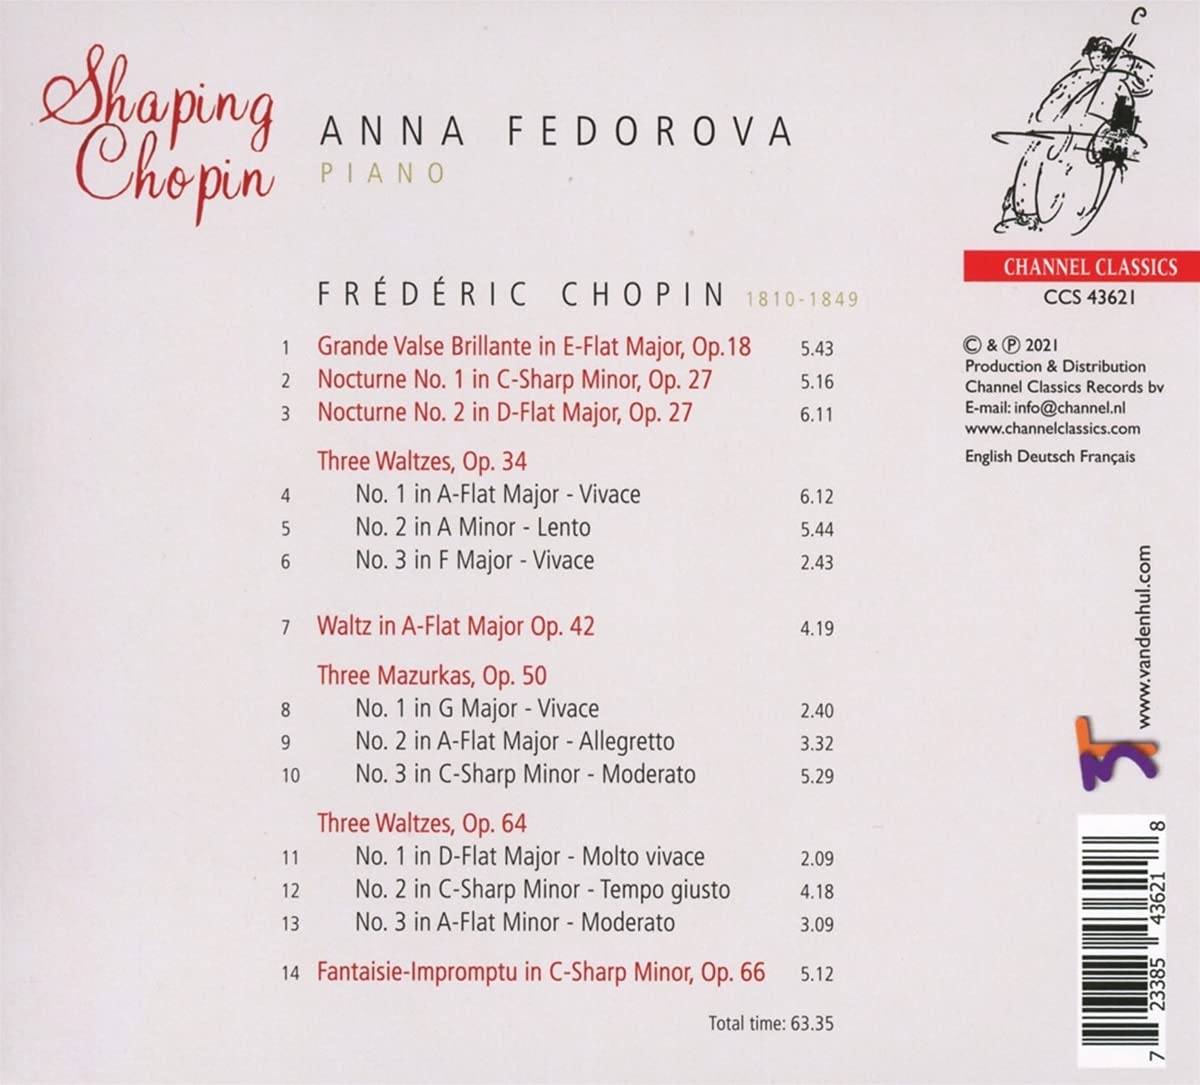 Anna Fedorova 쇼팽: 일곱 곡의 왈츠, 즉흥환상곡, 세 곡의 마주르카 외 (Chopin: Waltzs, Impromptu No.4 Op.66 'Fantaisie-Impromptu', Mazurkas Op.50) 